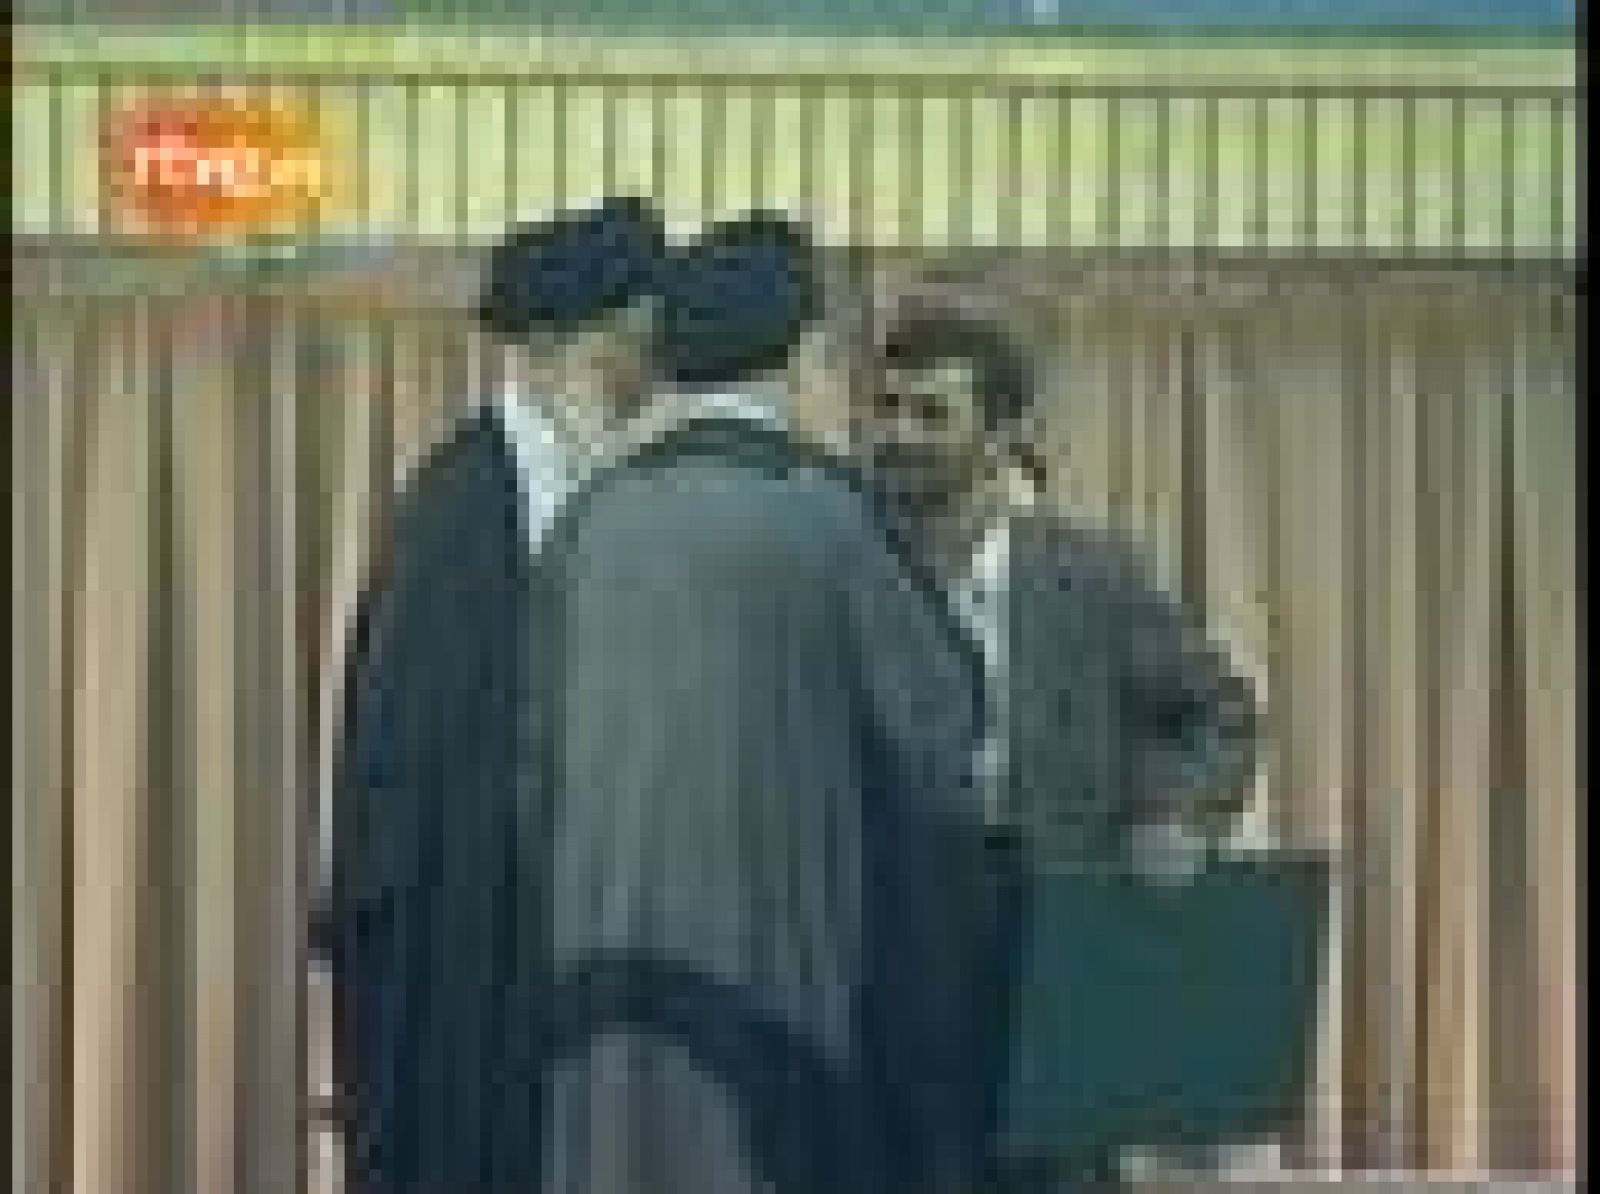 El acto protocolario ha sido transmitido por la televisión estatal y se ha podido ver como Ahmadineyad besaba el hombro de Jamenei en lugar de la mano como hizo en el acto de ratificación del primer mandato hace cuatro años.